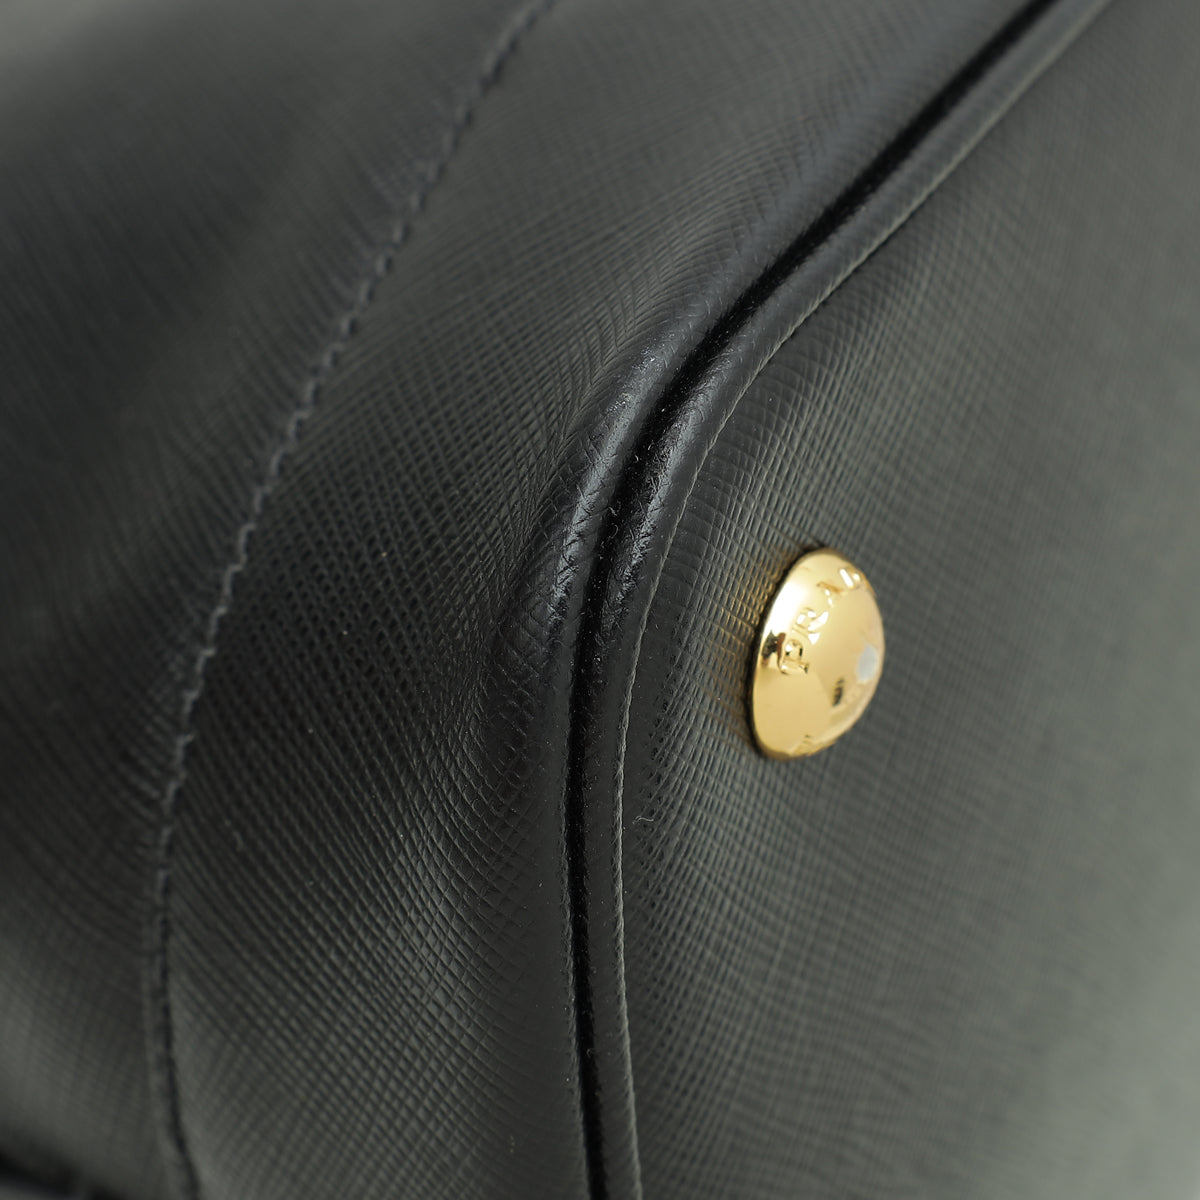 Prada Black Lux Open Promenade Tote Medium Bag – The Closet